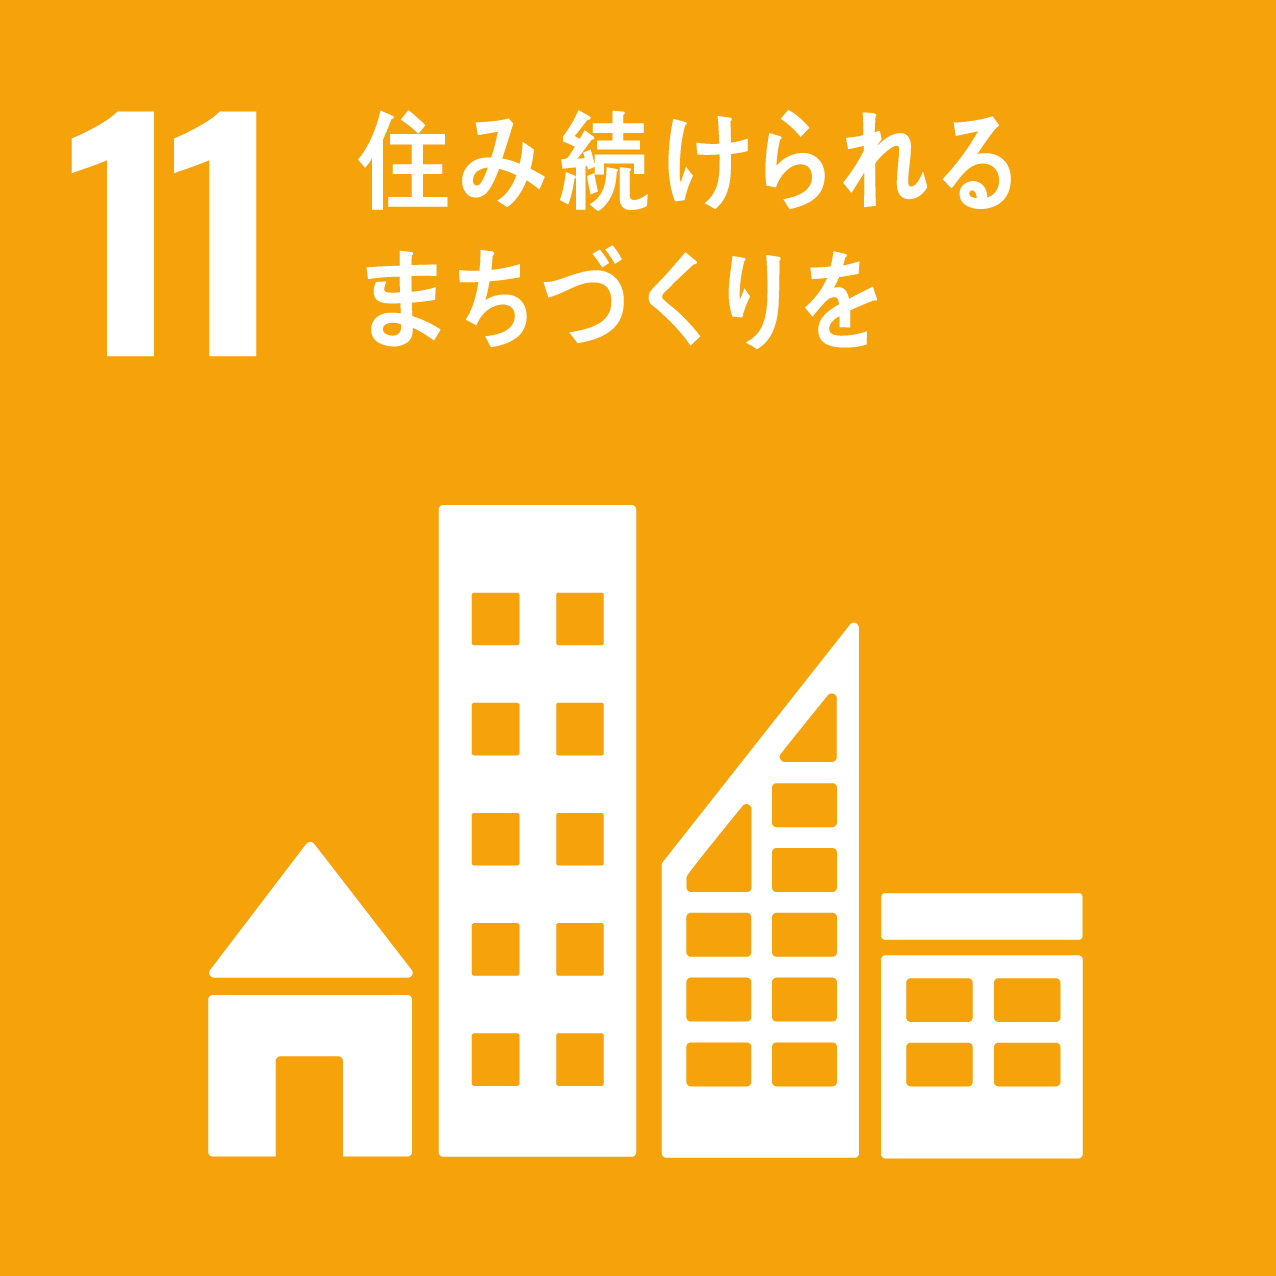 日南町と日南町産業振興センターが目指す、SDGs11のロゴ